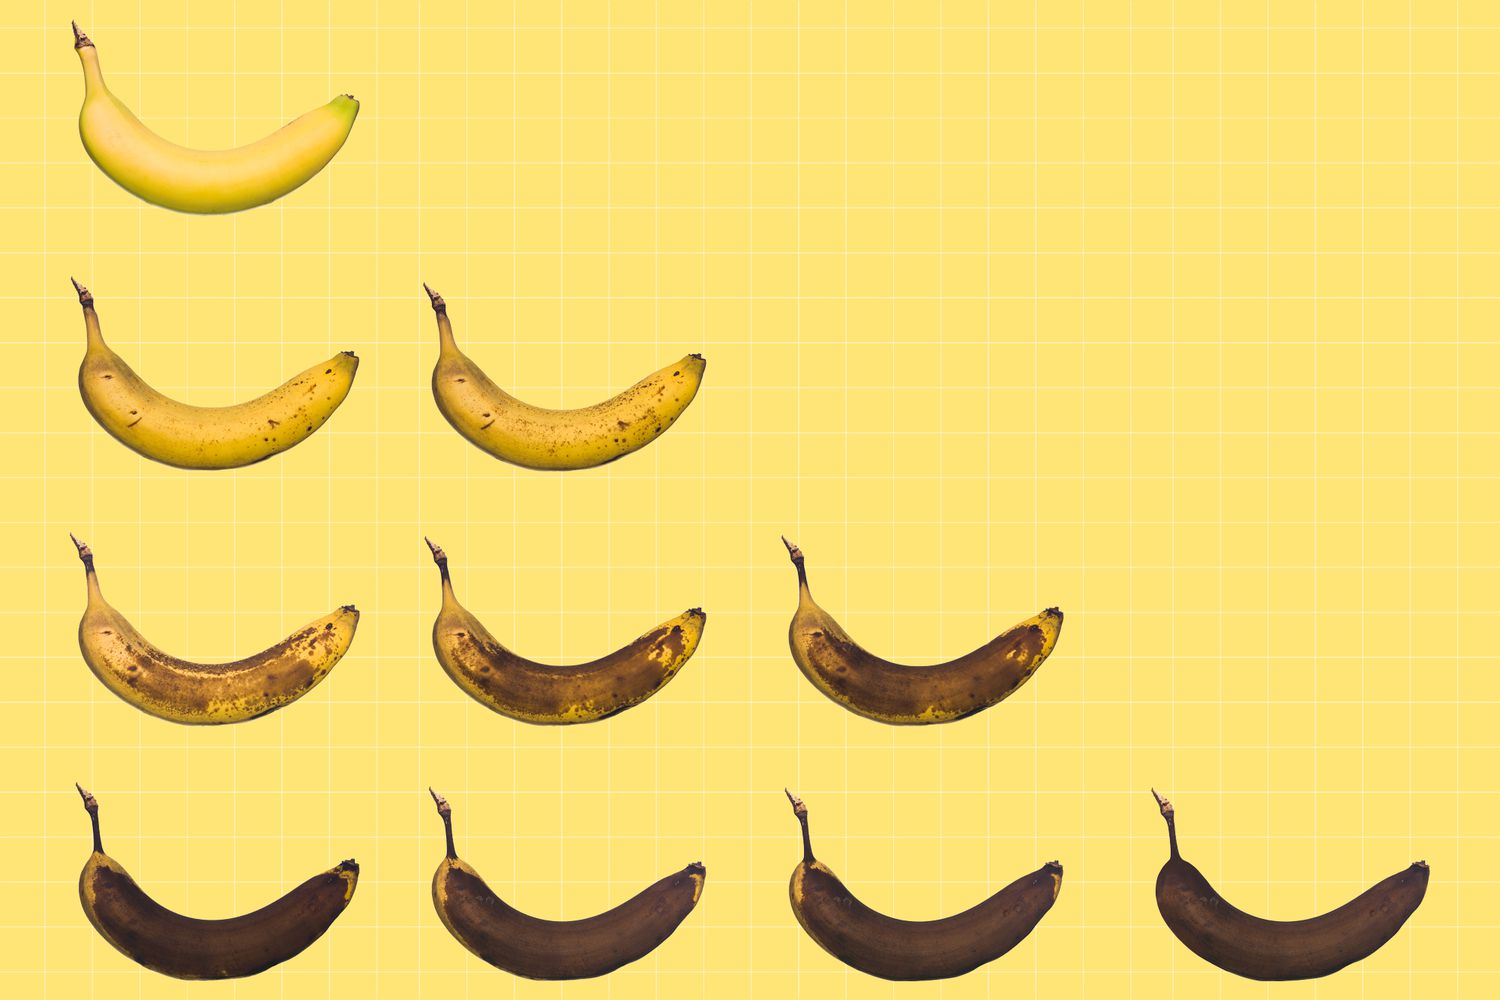 Fotos de plátanos en distintos estados de madurez.